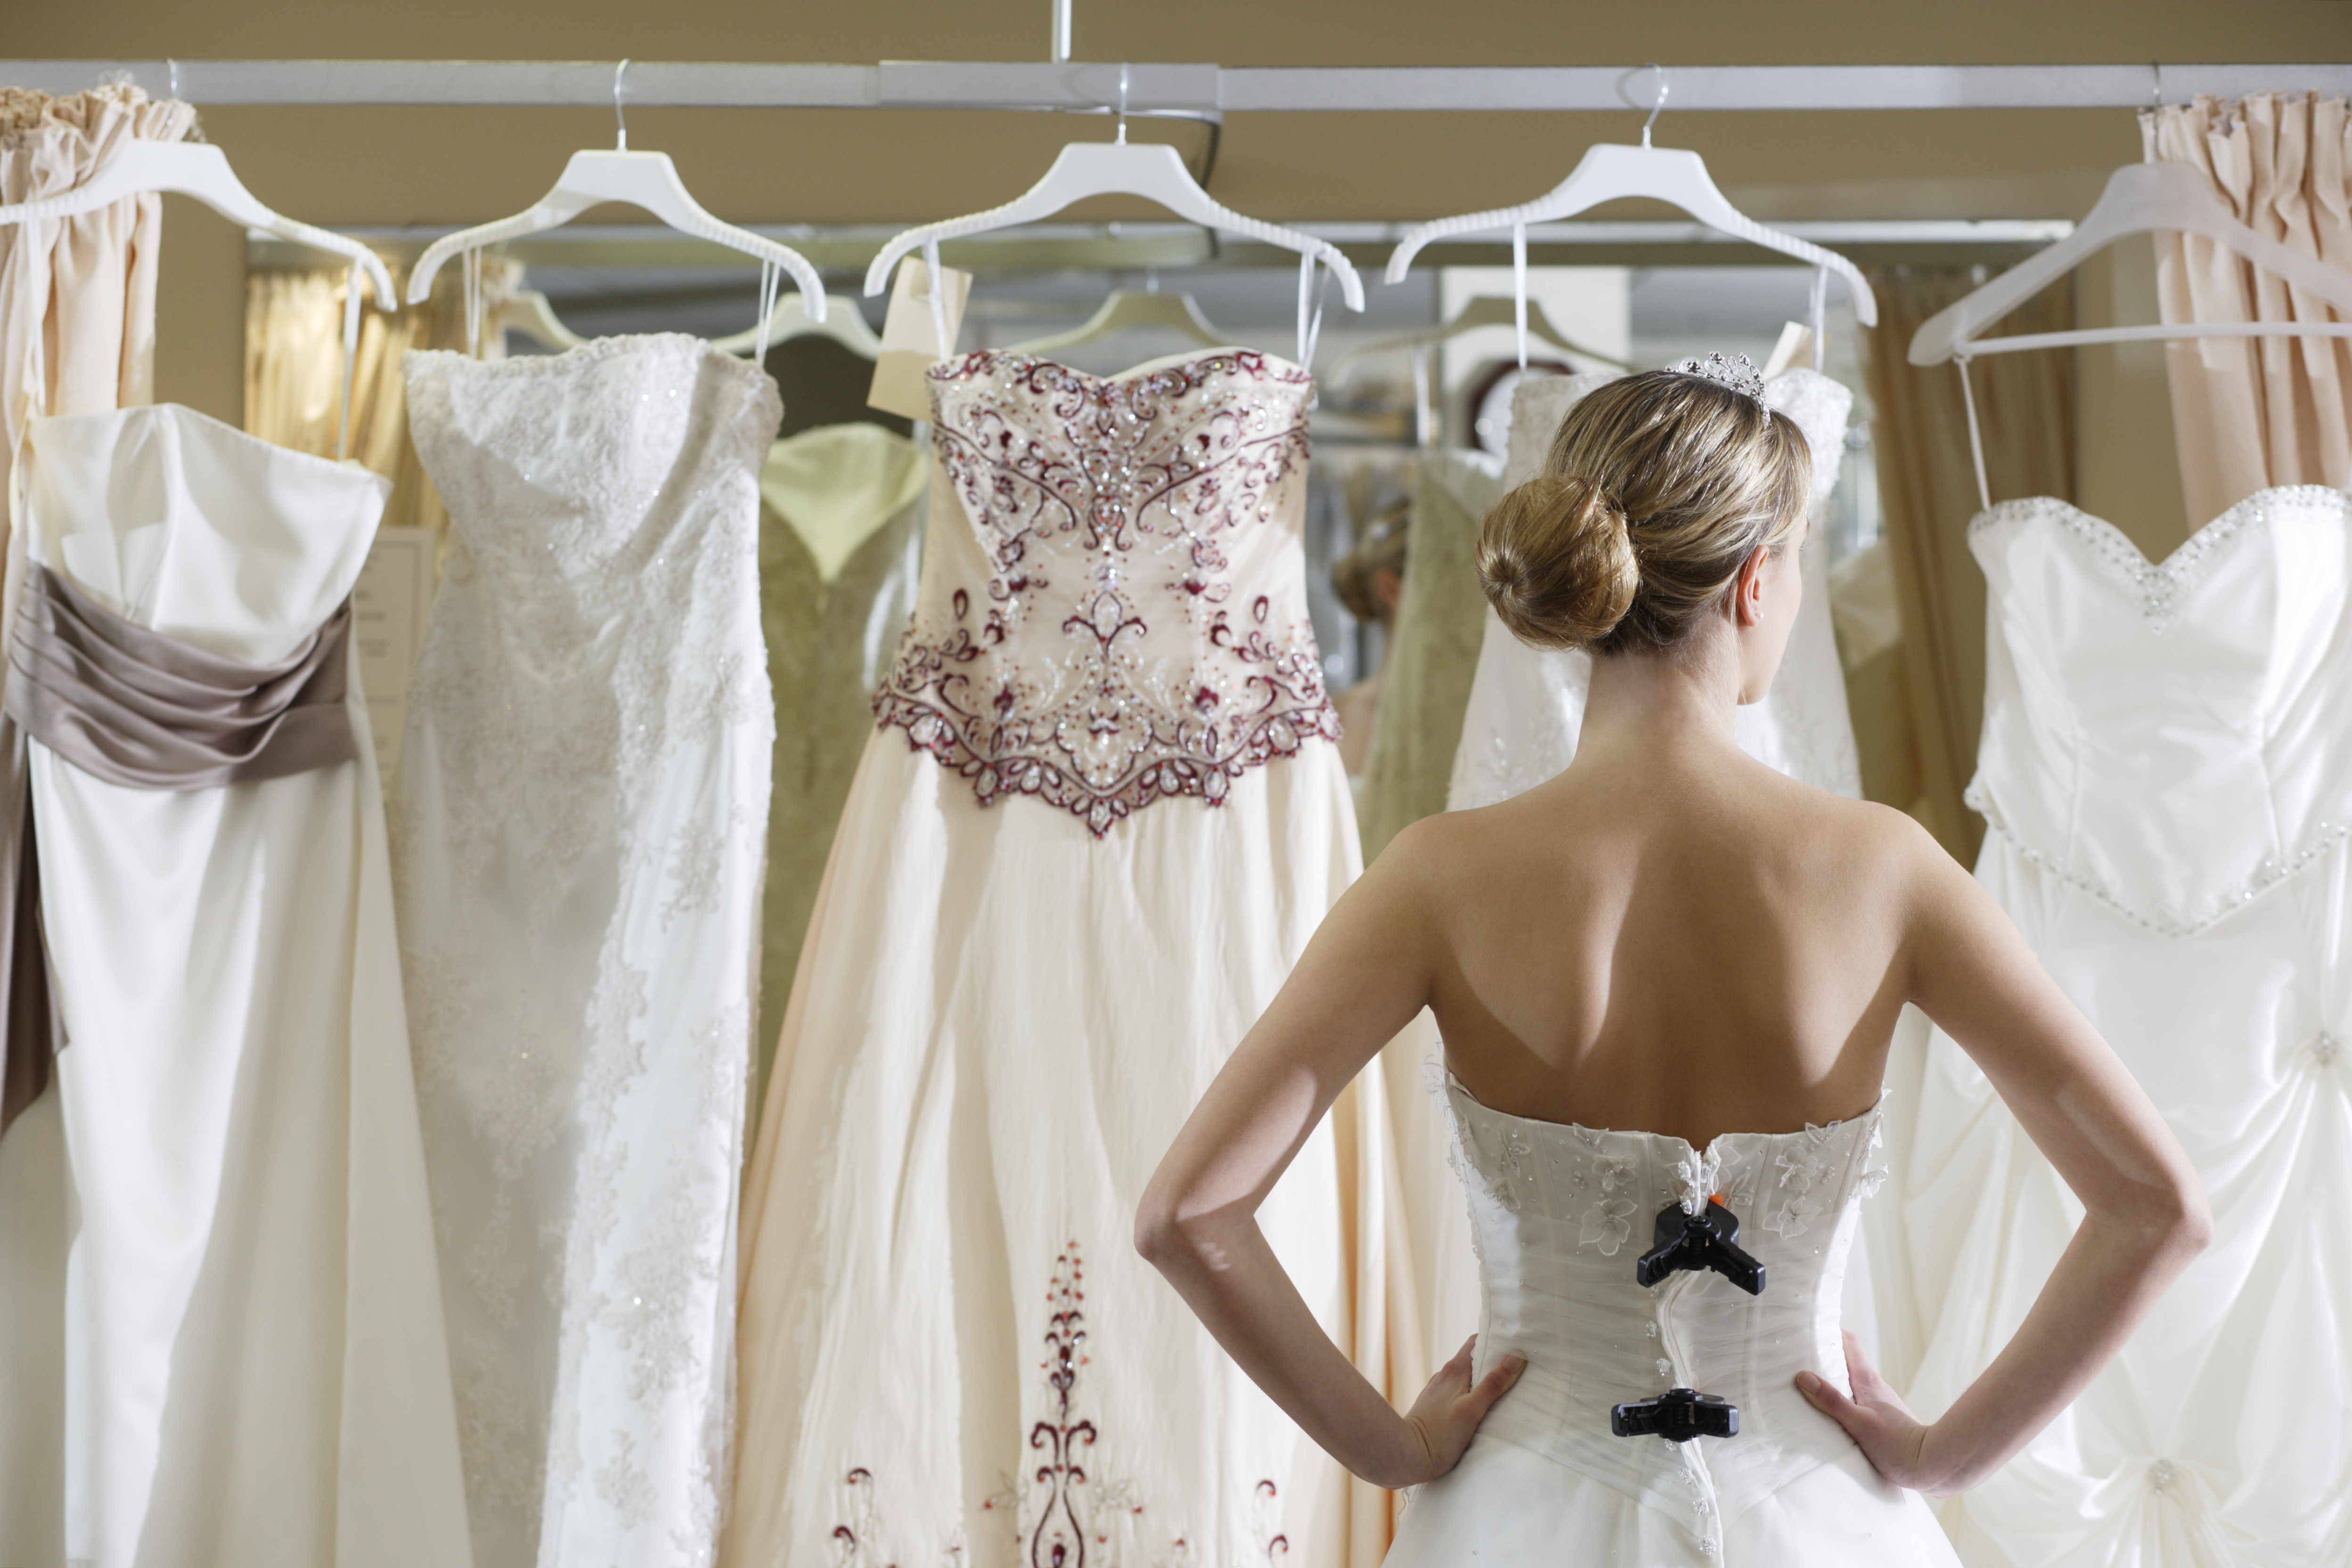 Die Braut sieht sich den Kleiderständer an | Quelle: Getty Images